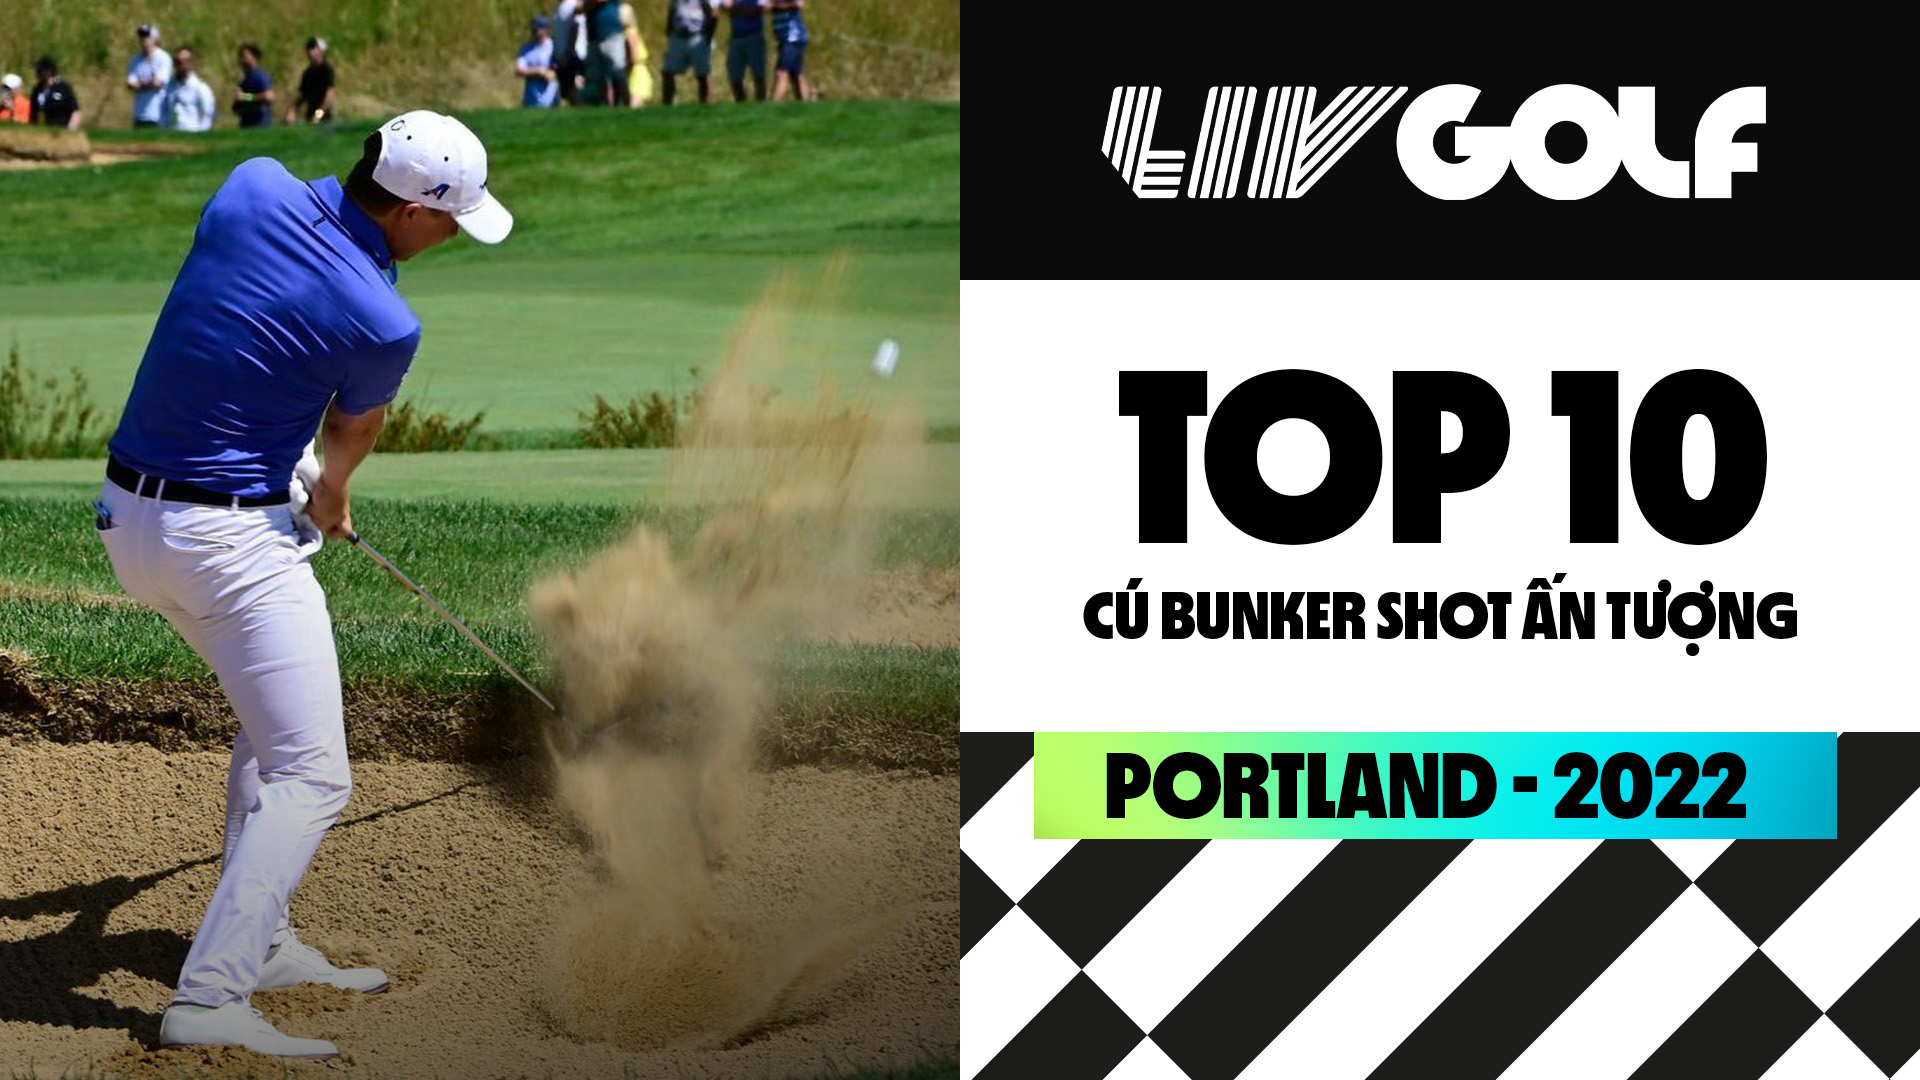 TOP 10 cú đánh bunker shots ấn tượng LIV Golf Portland 2022 - LIV Golf Portland 2022